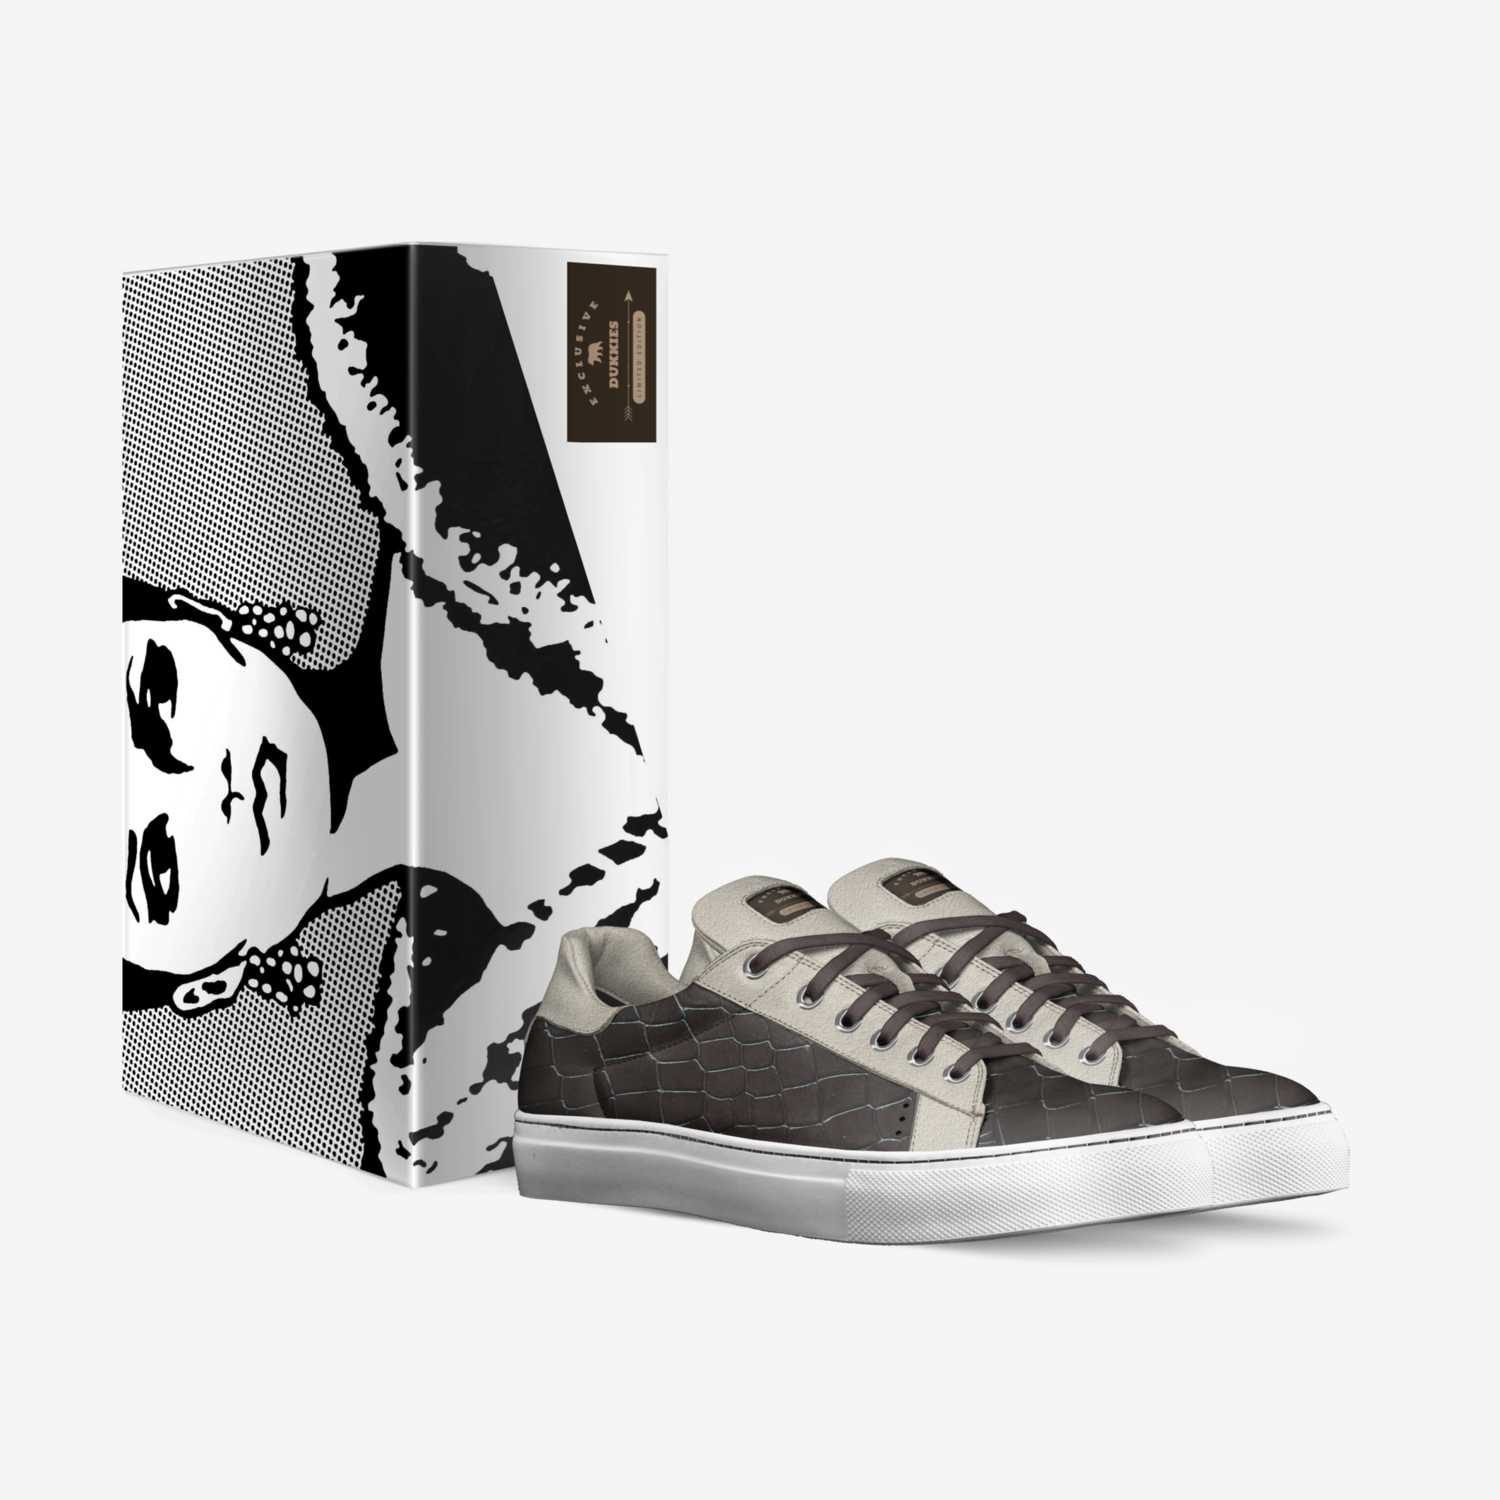 Dukkies custom made in Italy shoes by Irine Gaasbeek | Box view